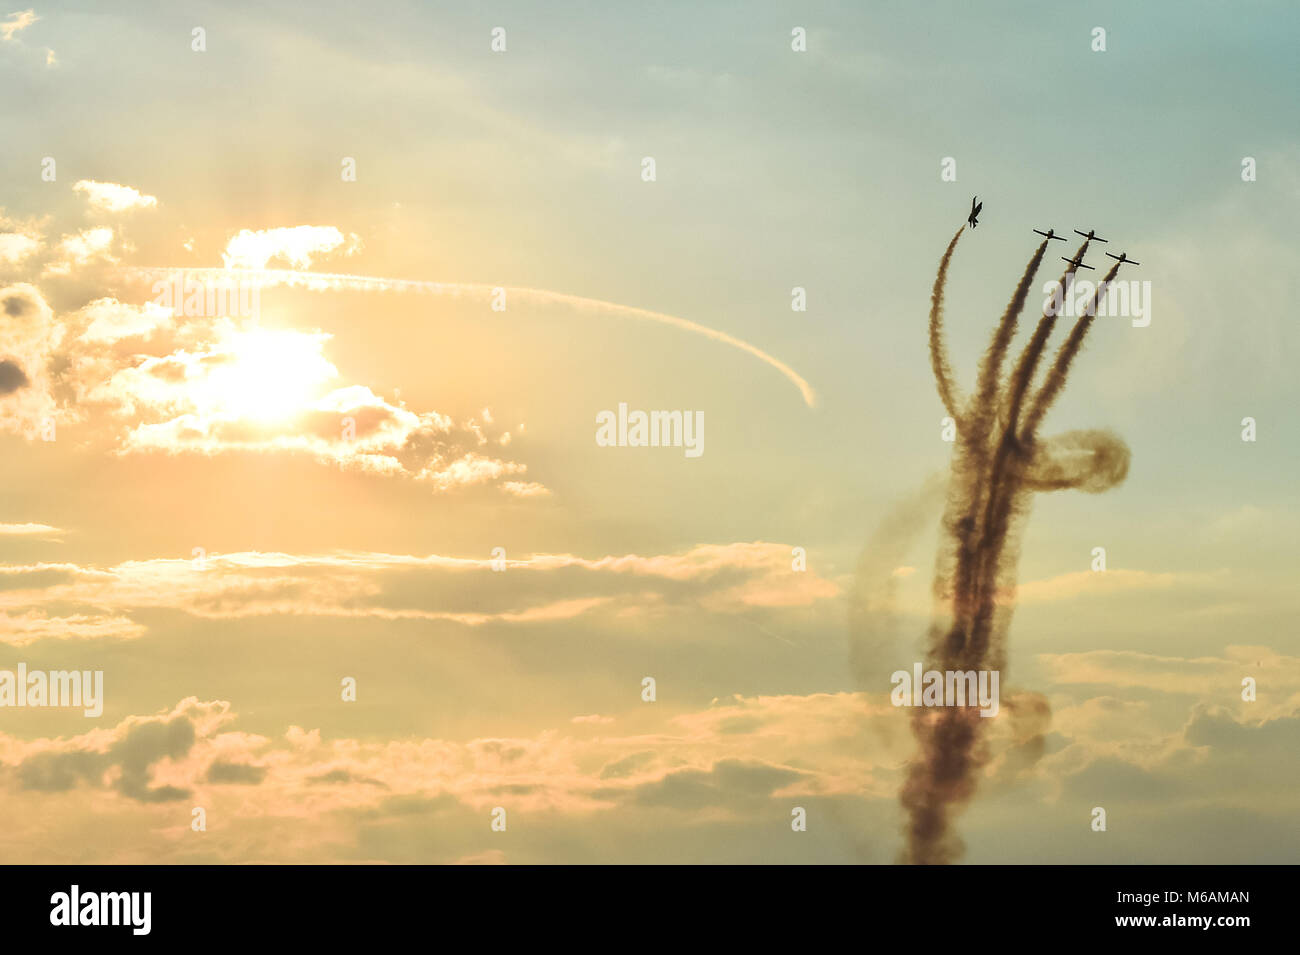 Avions acrobatiques faisant des acrobaties à un Meeting Aérien battant au coucher du soleil / crépuscule Banque D'Images